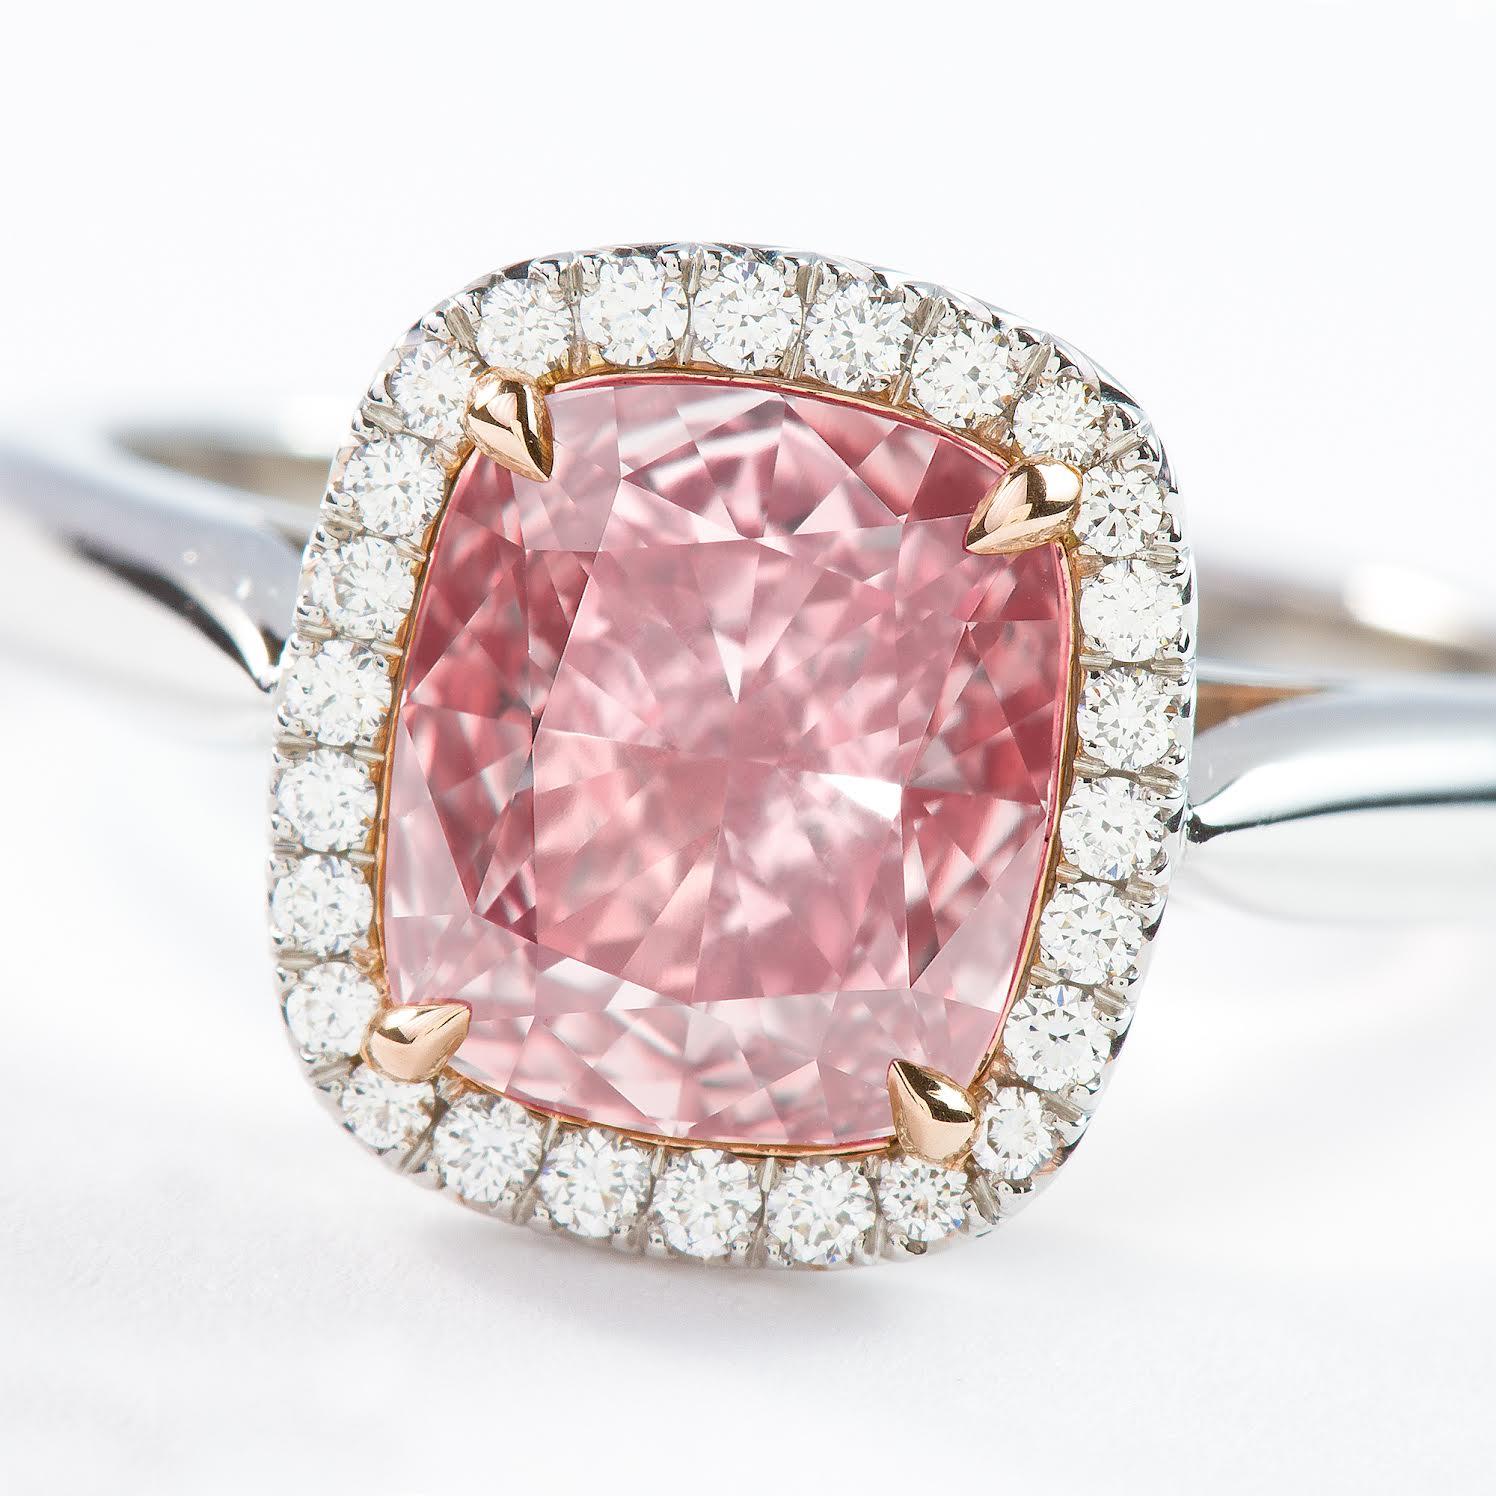 Dieser wunderschöne naturfarbene rosa Diamant von ISSAC NUSSBAUM NEW YORK wiegt beeindruckende 2,02 Karat und ist ein seltener kissenförmiger Stein mit einer  vs2 Klarheit fancy braun rosa mit rosa ist die vorherrschende Farbe. In einer